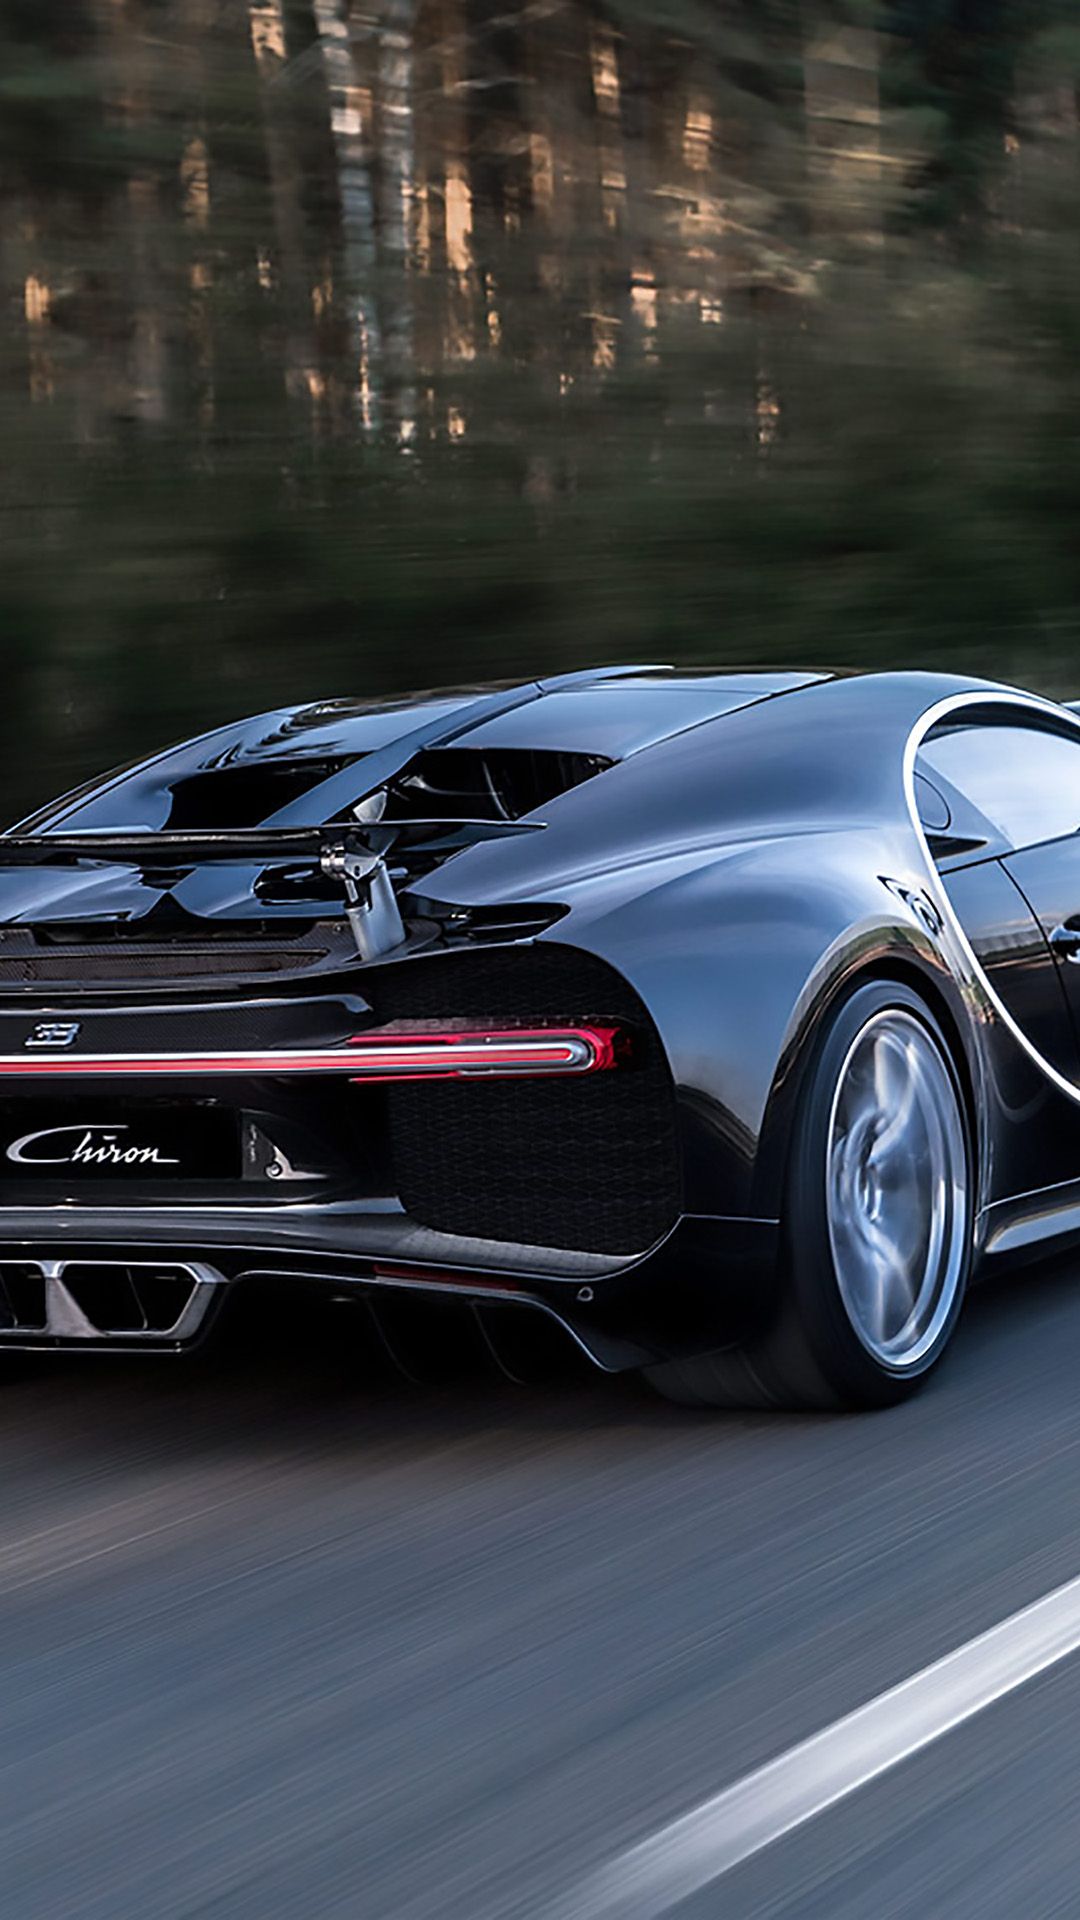 تصویر زمینه چشمگیر از ماشین Bugatti Chiron یا بوگاتی شیرون